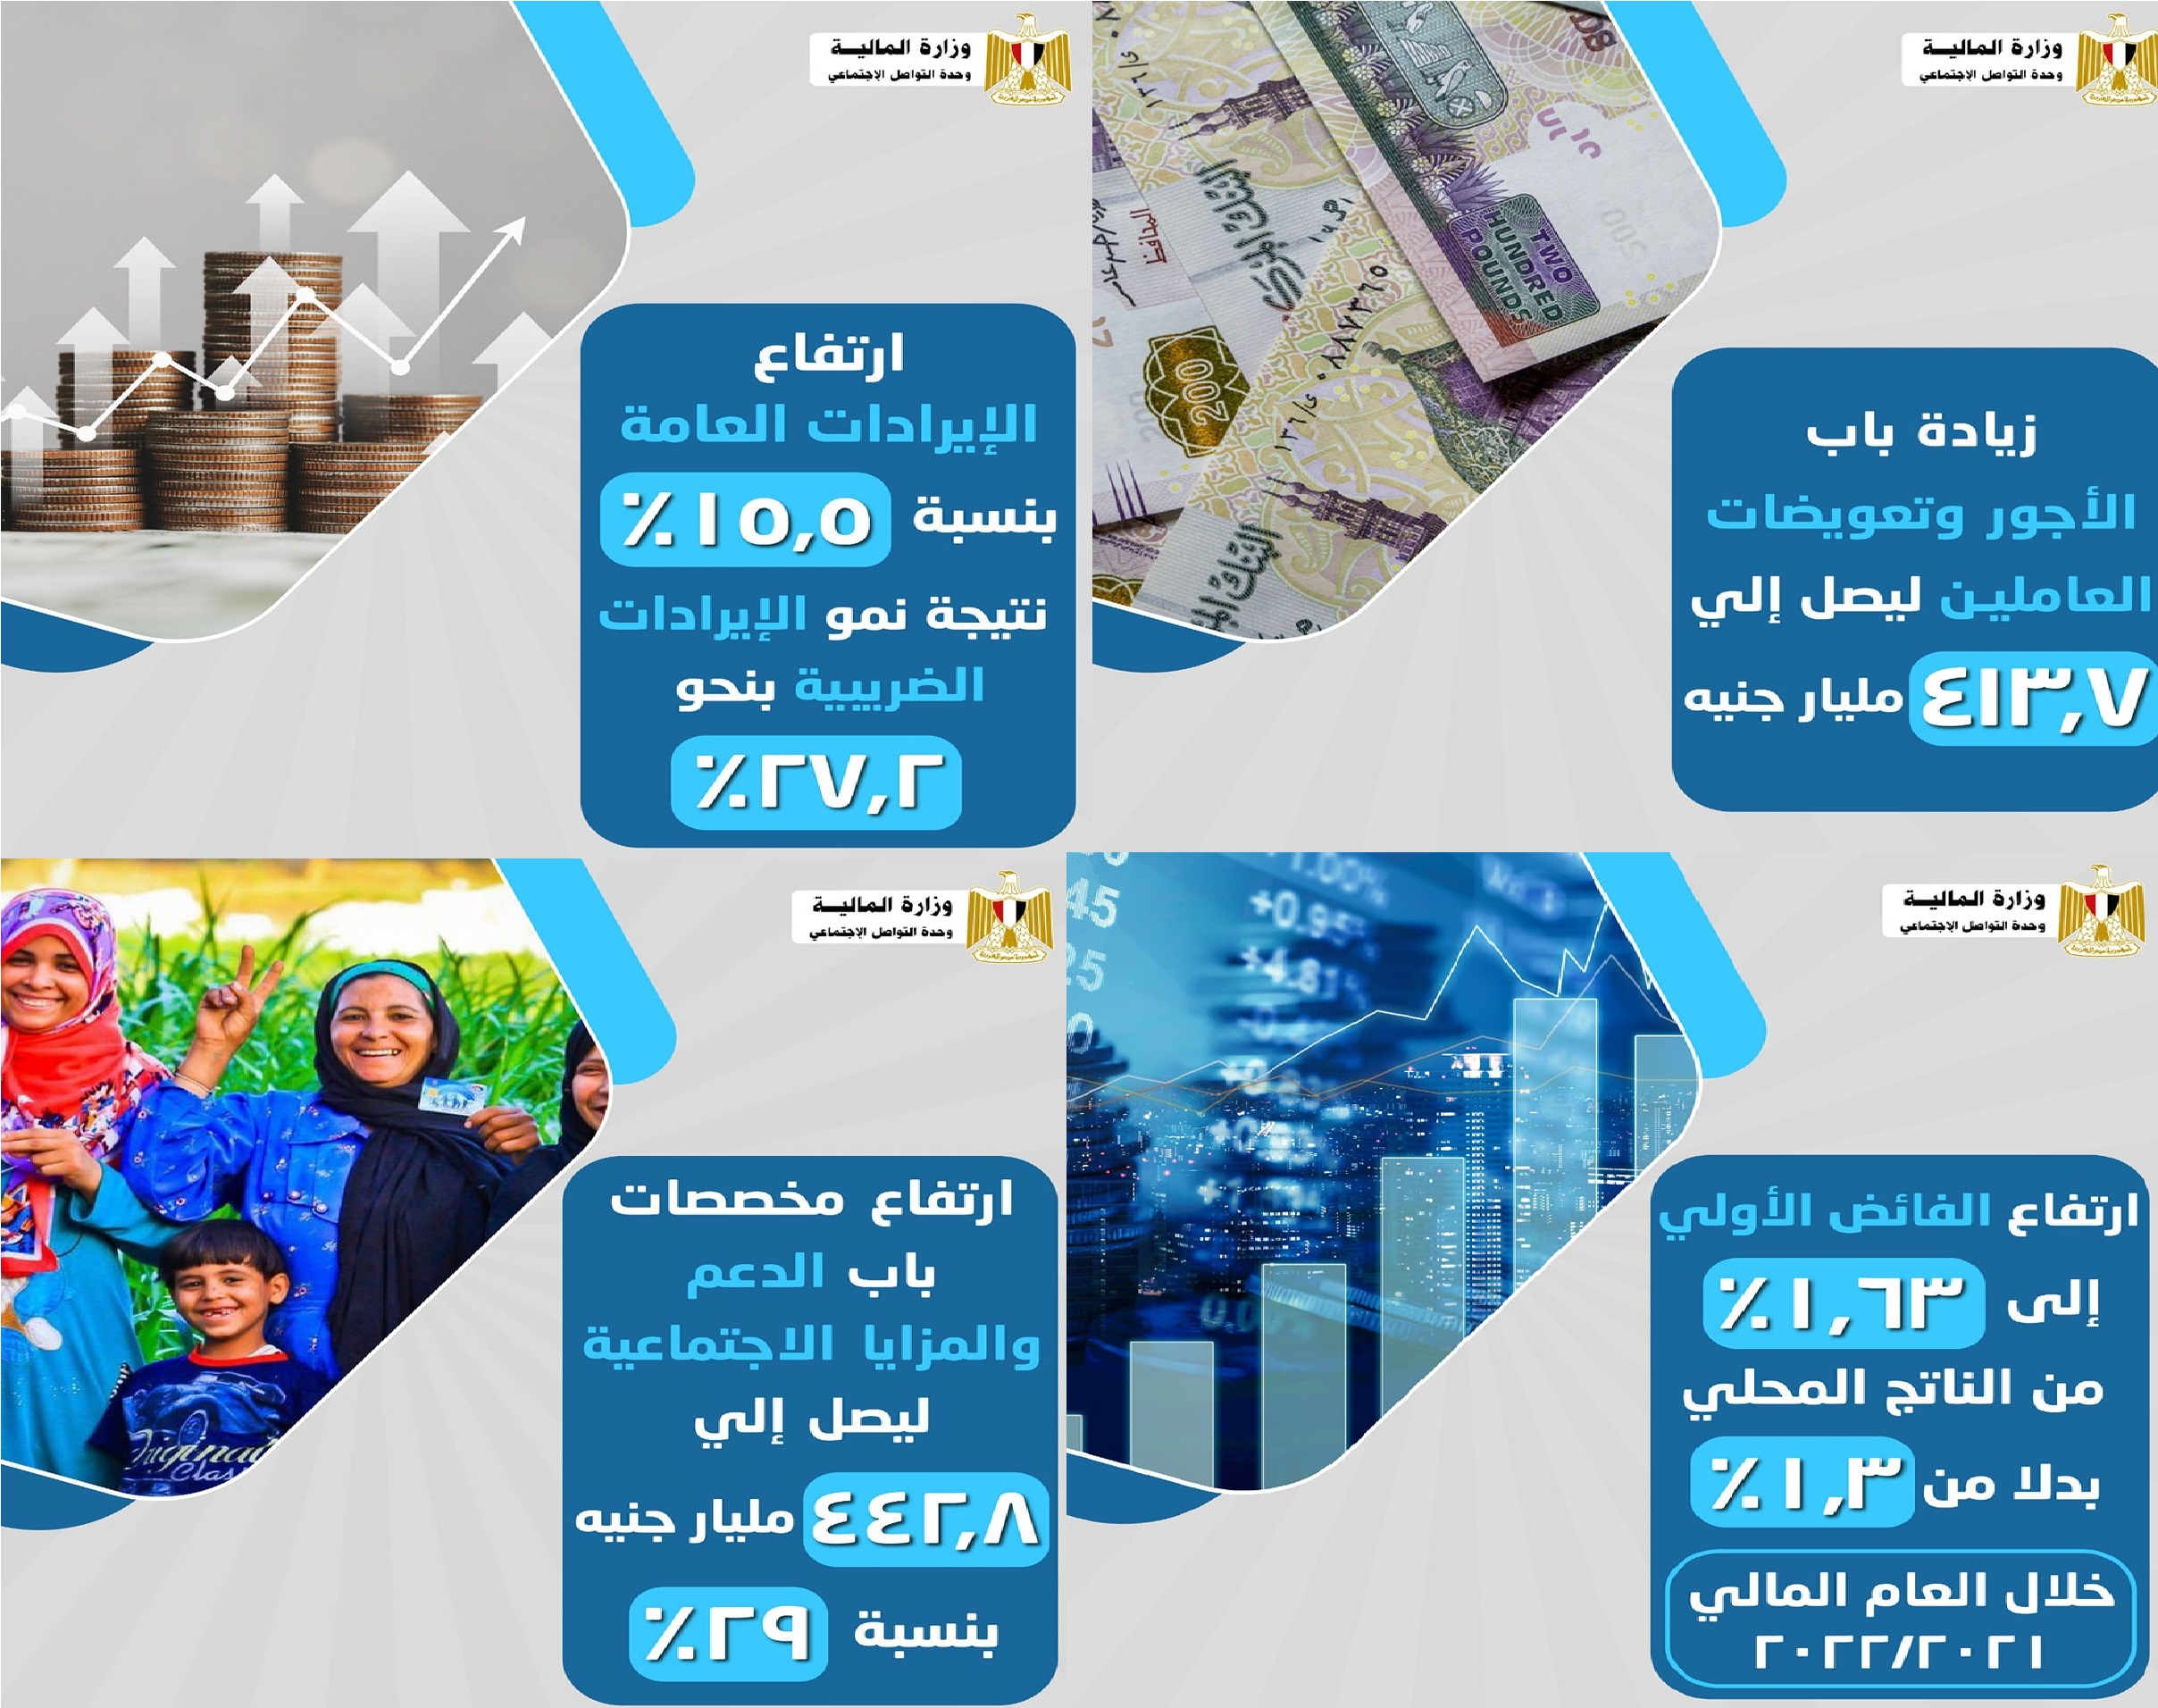 وزير المالية مصر على المسار الصحيح العجز في الموازنة يتراجع والفائض يرتفع في العام المالي الجاري